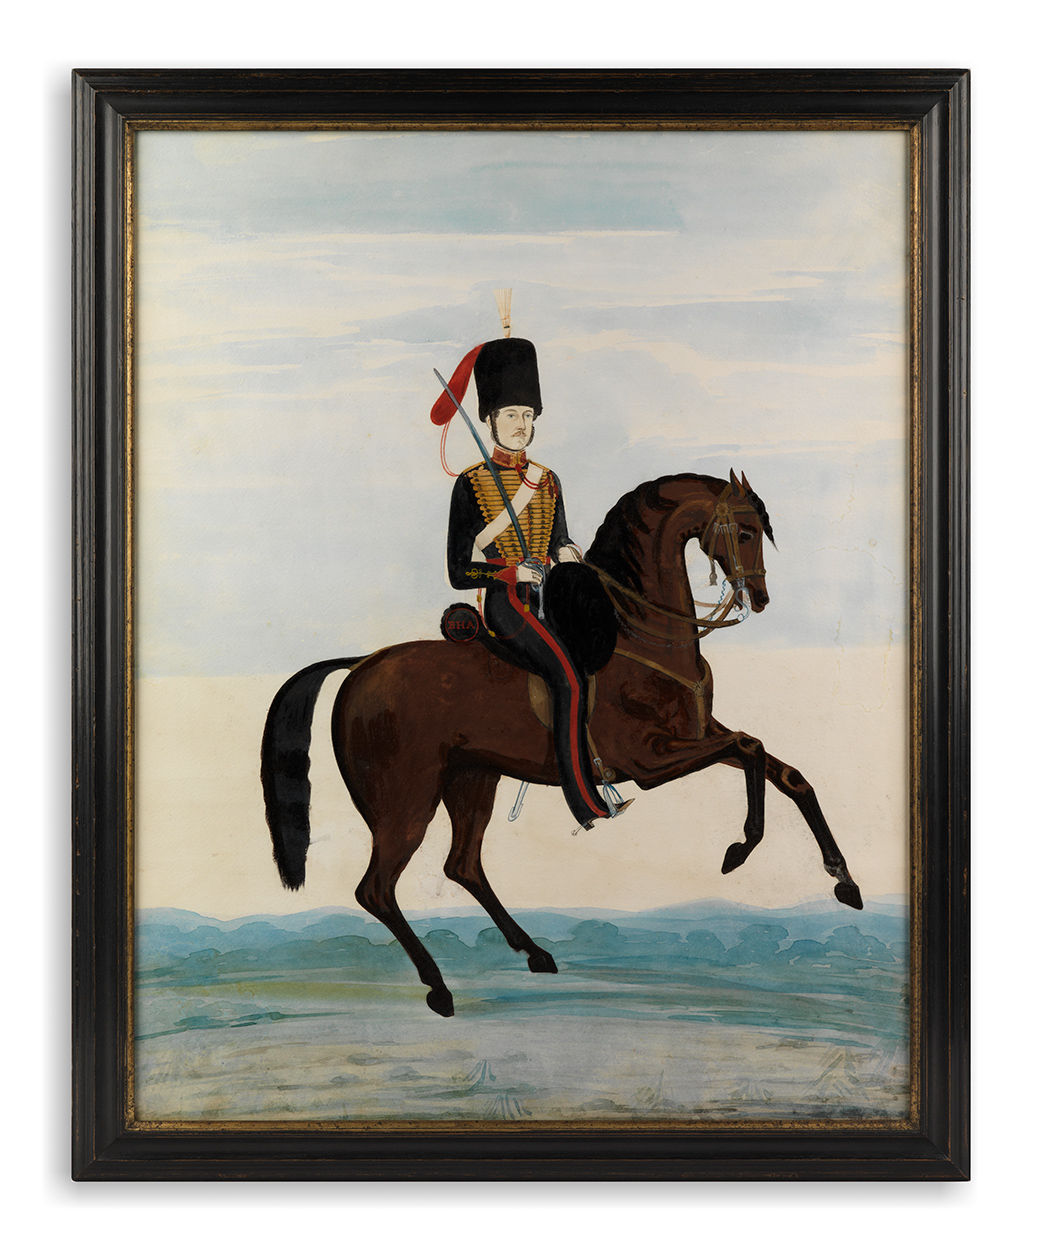 Remarkable Naïve Military Equestrian Portrait